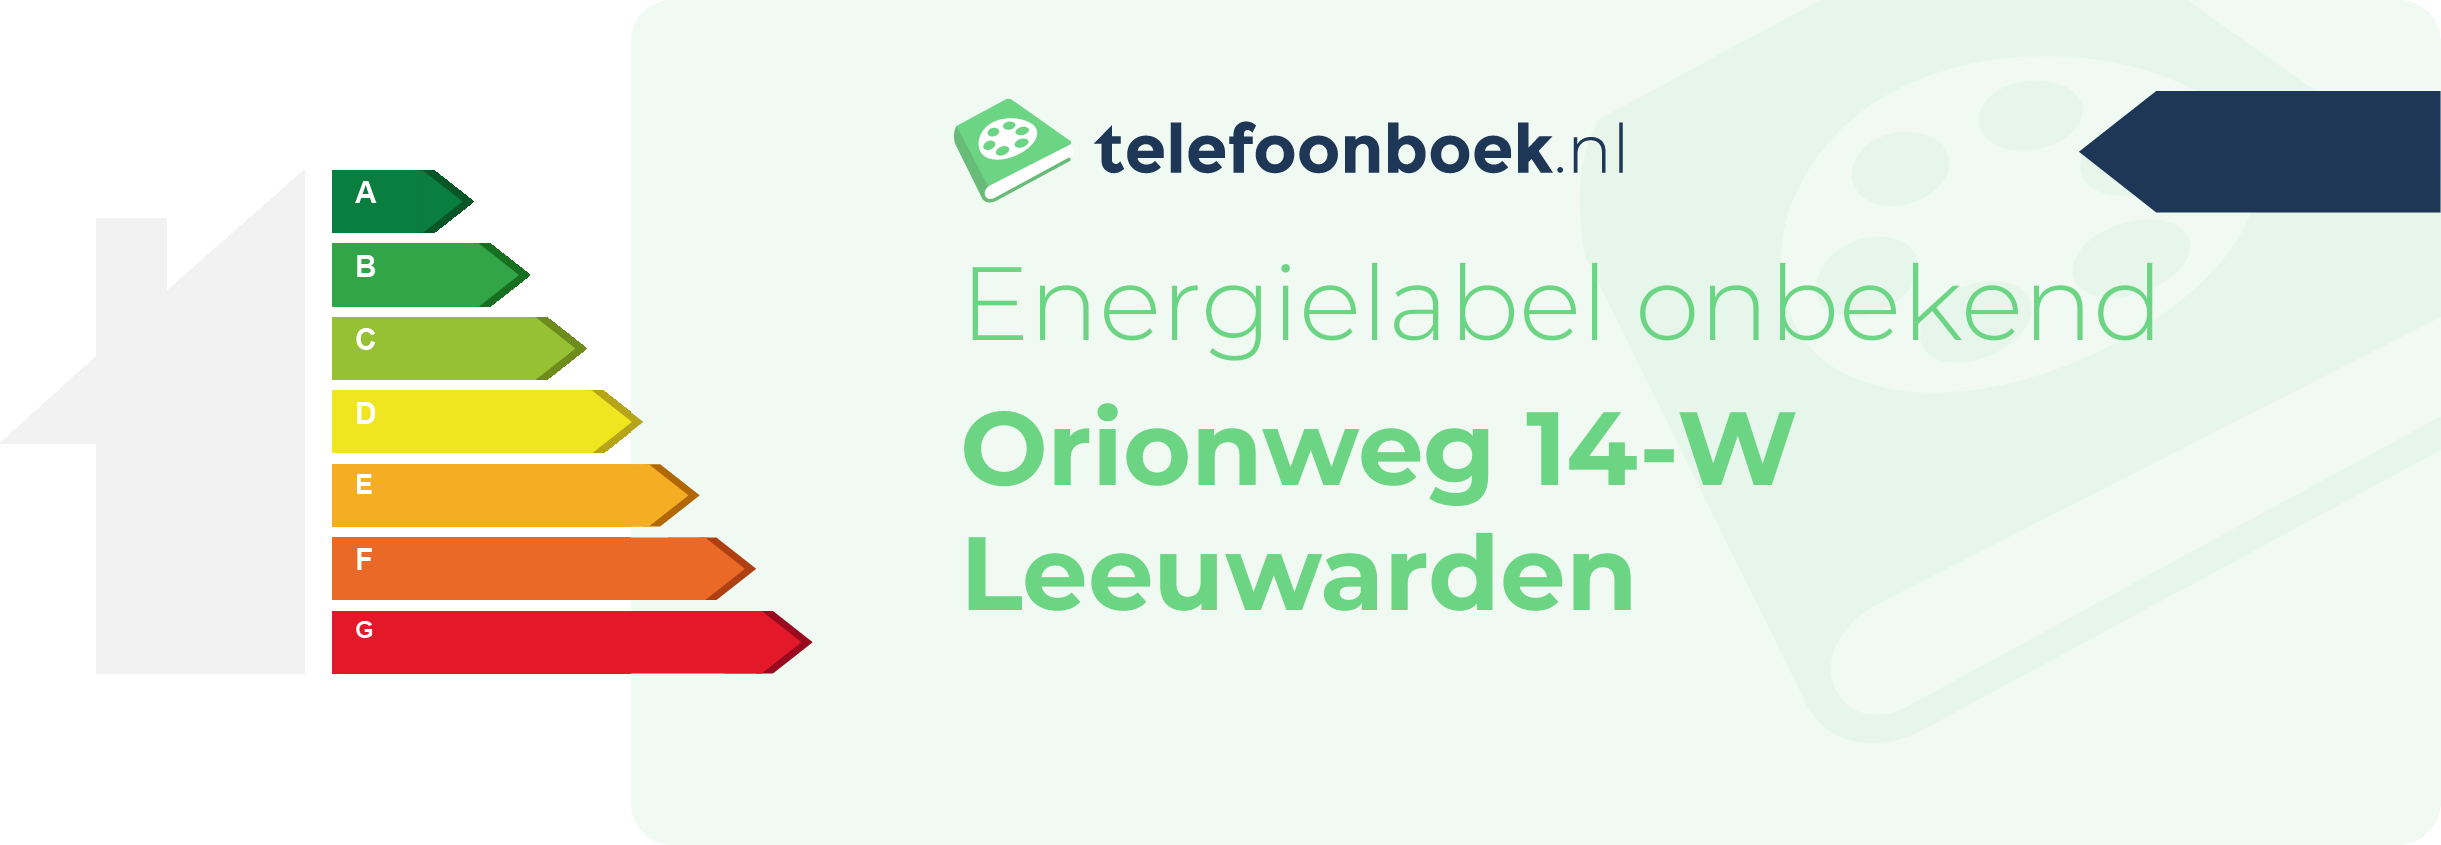 Energielabel Orionweg 14-W Leeuwarden